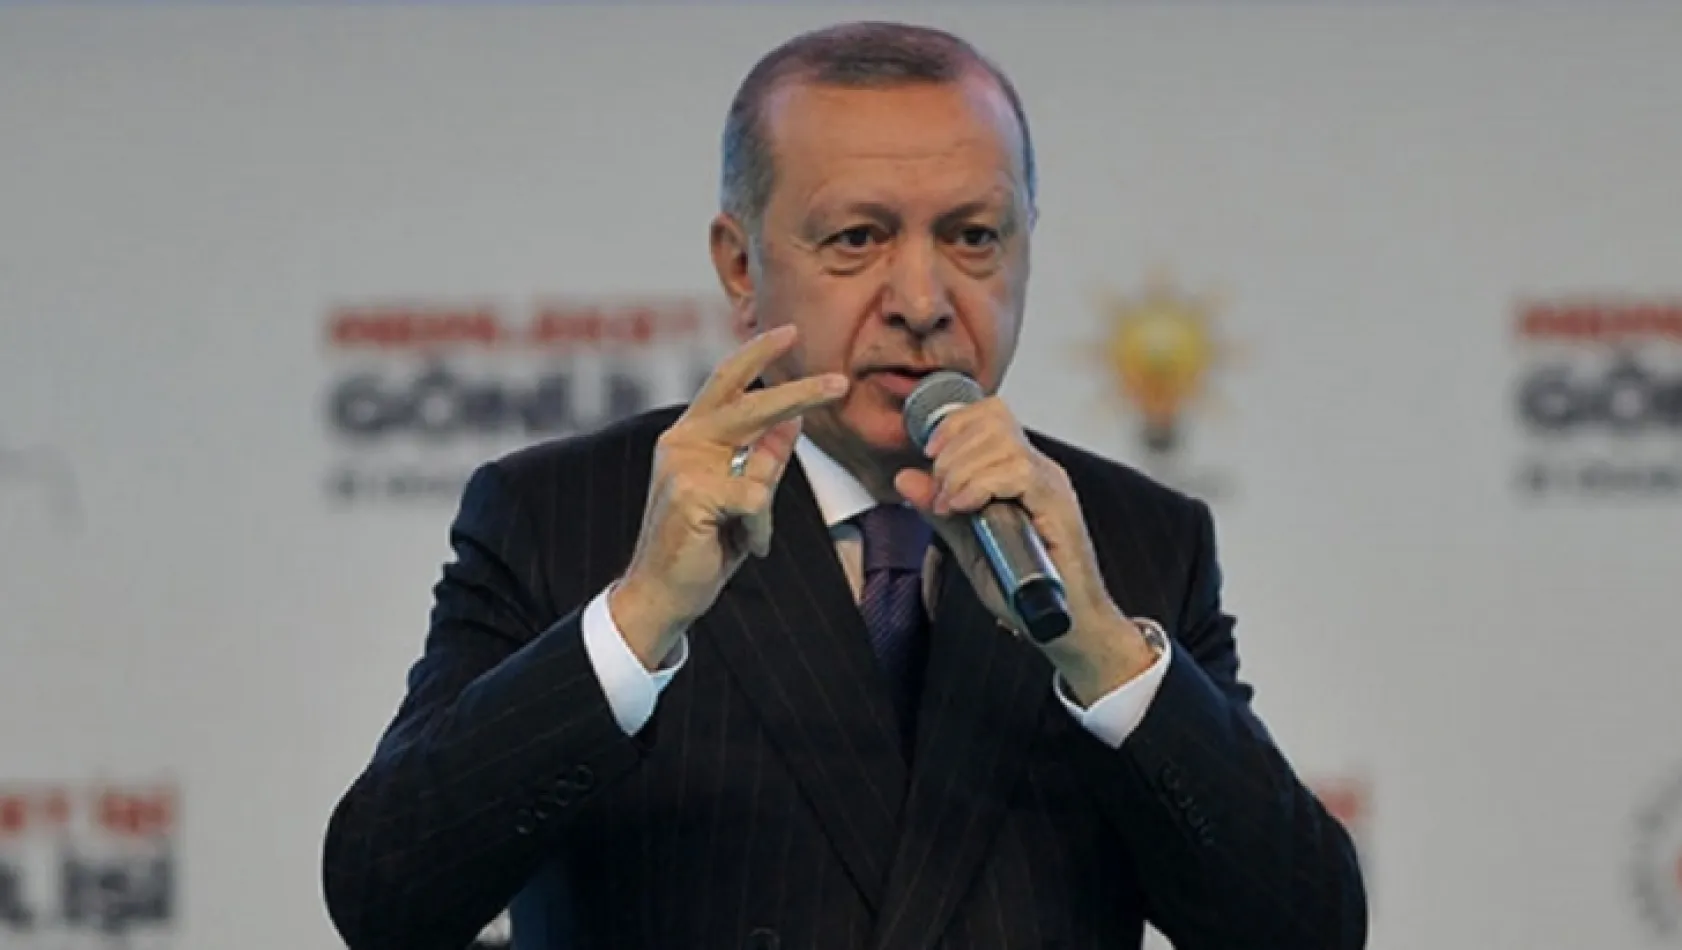 Erdoğan AK Parti'nin seçim manifestosunu açıkladı